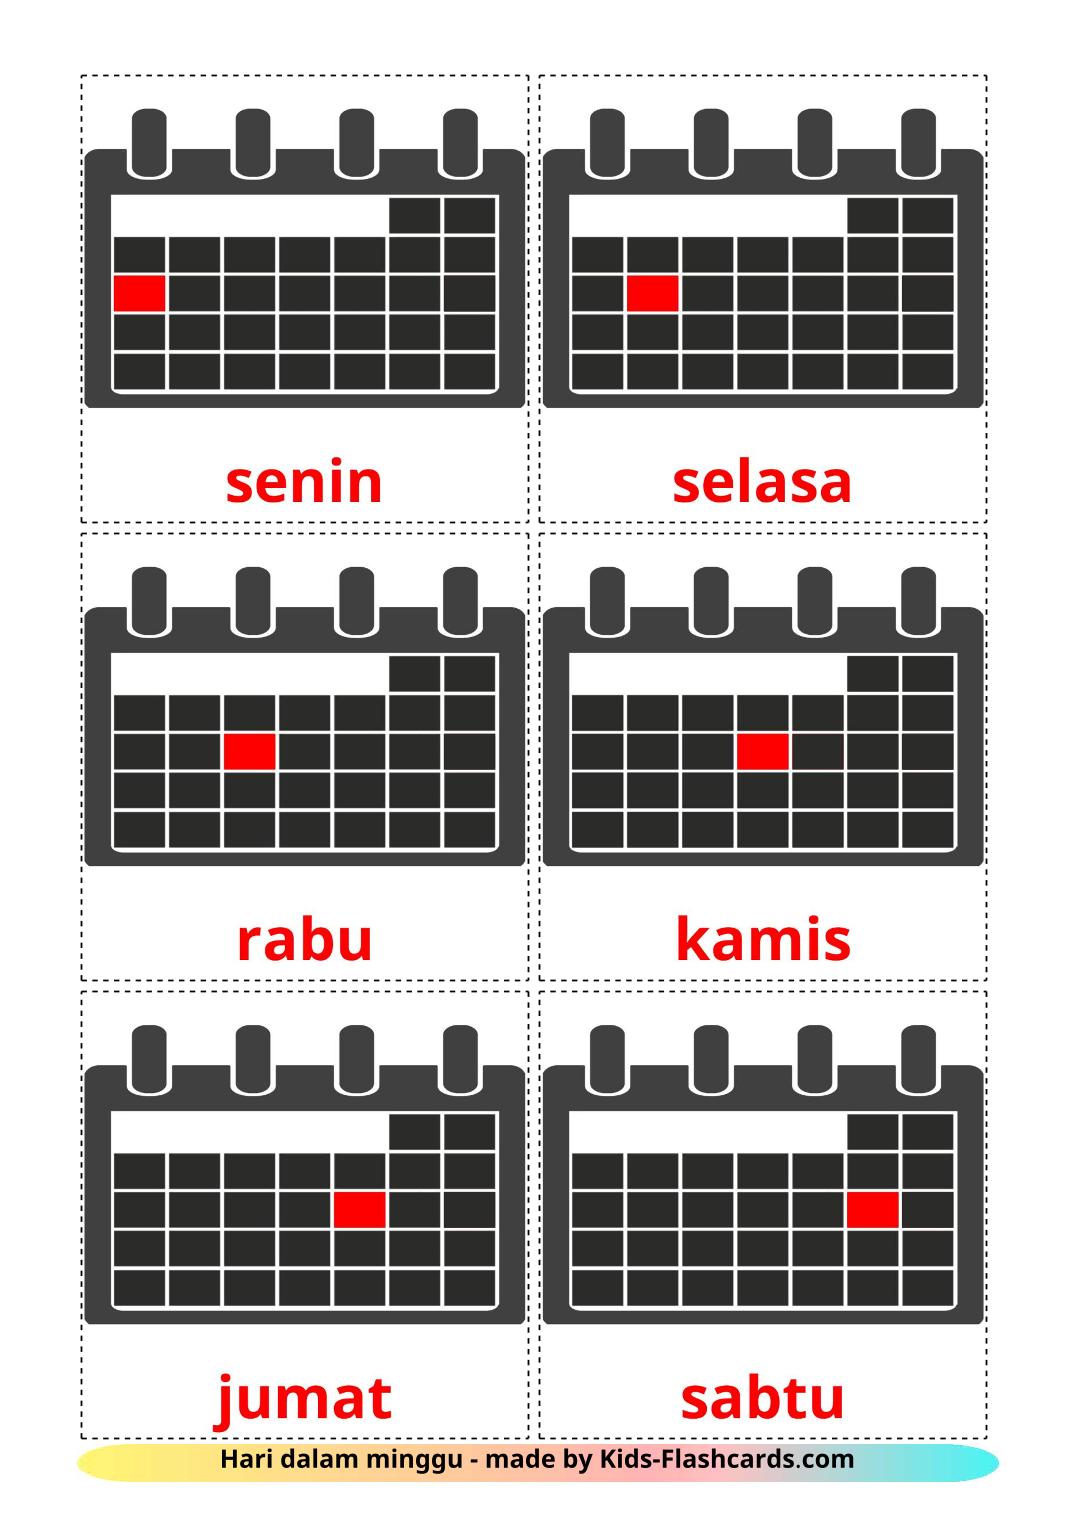 Días de la semana - 12 fichas de indonesio para imprimir gratis 